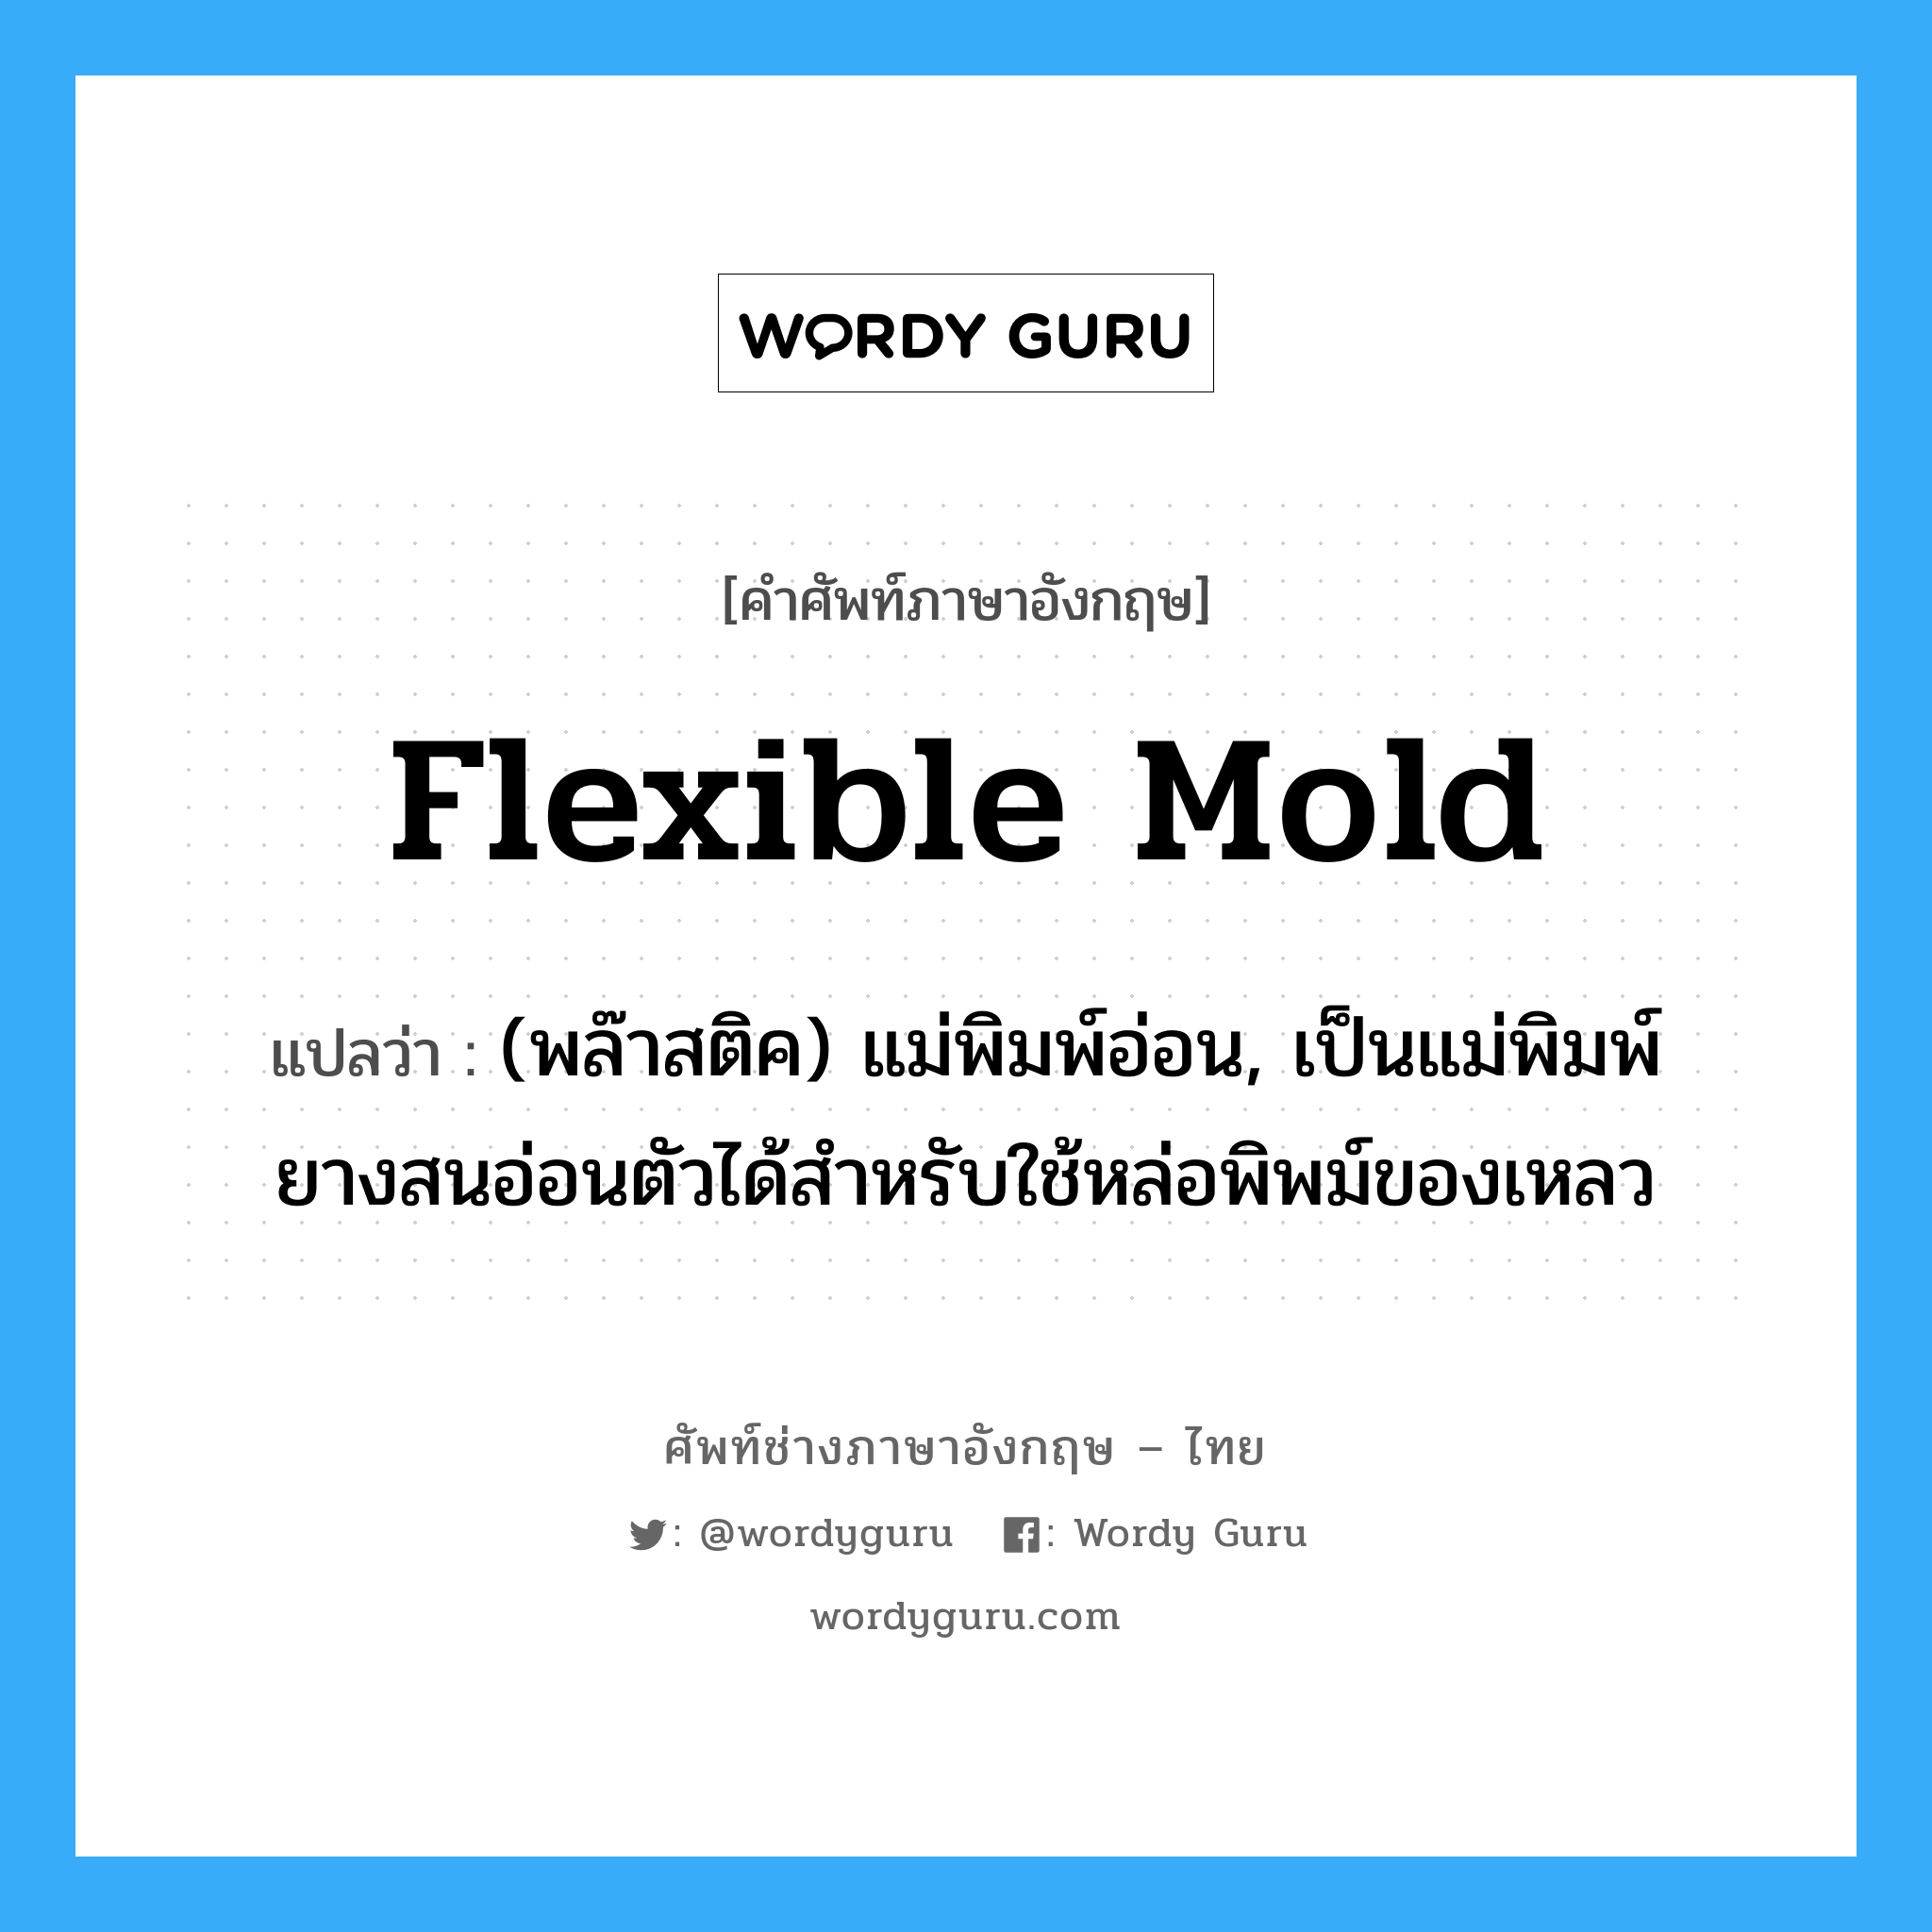 flexible mold แปลว่า?, คำศัพท์ช่างภาษาอังกฤษ - ไทย flexible mold คำศัพท์ภาษาอังกฤษ flexible mold แปลว่า (พล๊าสติค) แม่พิมพ์อ่อน, เป็นแม่พิมพ์ยางสนอ่อนตัวได้สำหรับใช้หล่อพิพม์ของเหลว